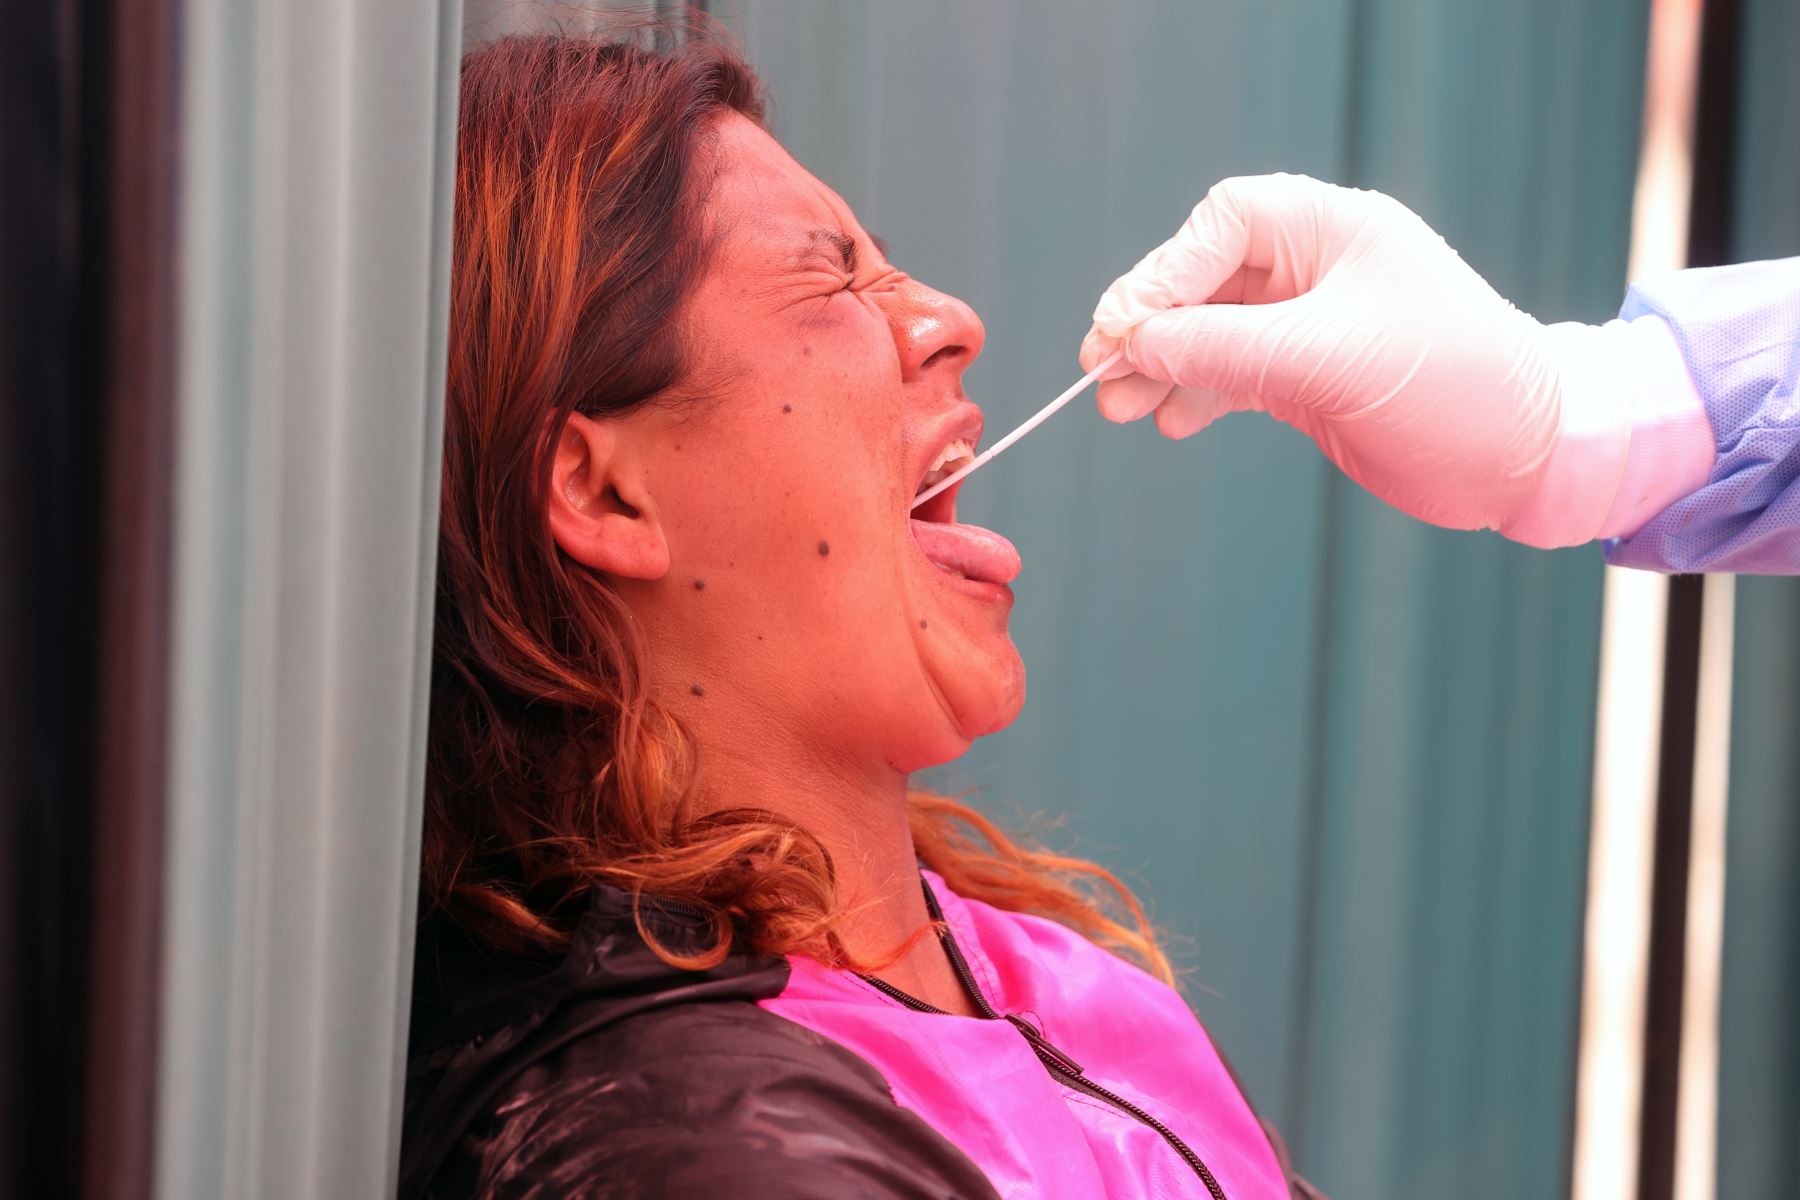 Los casos de contagio con la variante ómicron aumentaron a 332 a nivel nacional, con la detección de 23 contagios nuevos, uno de los cuales se identificó en la región Moquegua, reveló hoy el ministro de Salud, Hernando Cevallos Flores. ANDINA/Vidal Tarqui